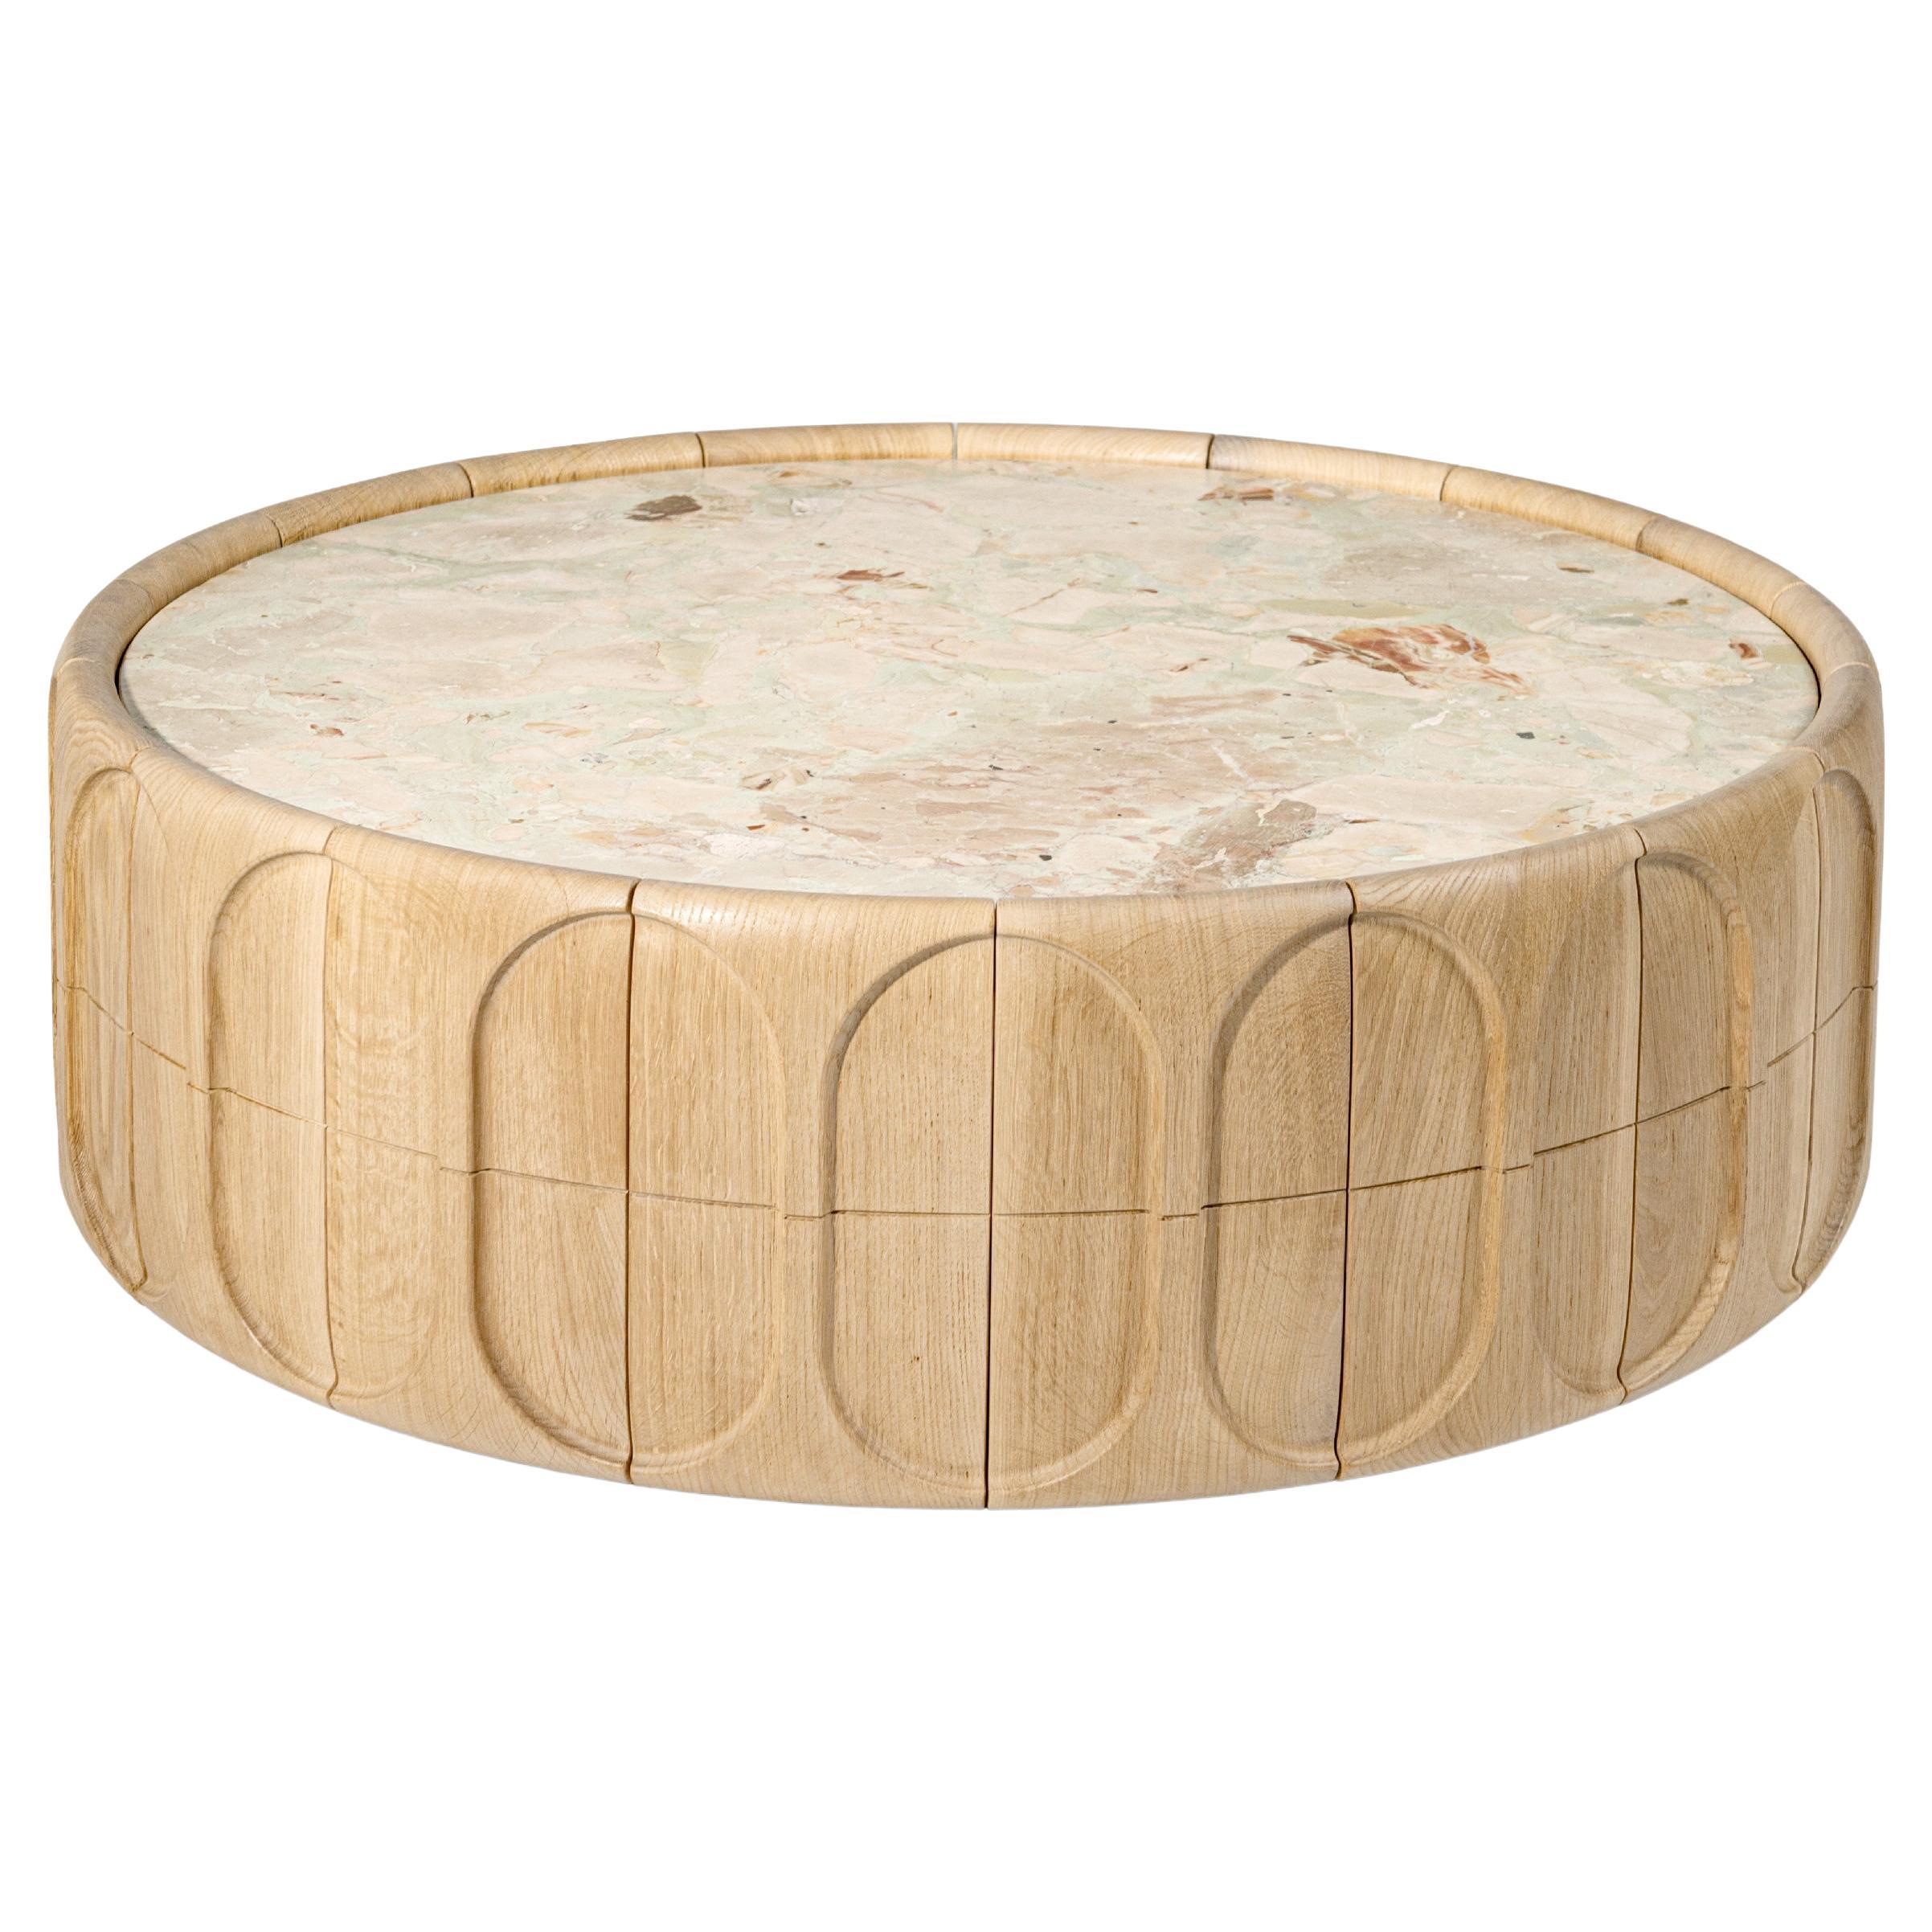 Table basse contemporaine par HESSENTIA, bois d'Oak naturel avec facettes sculpturales